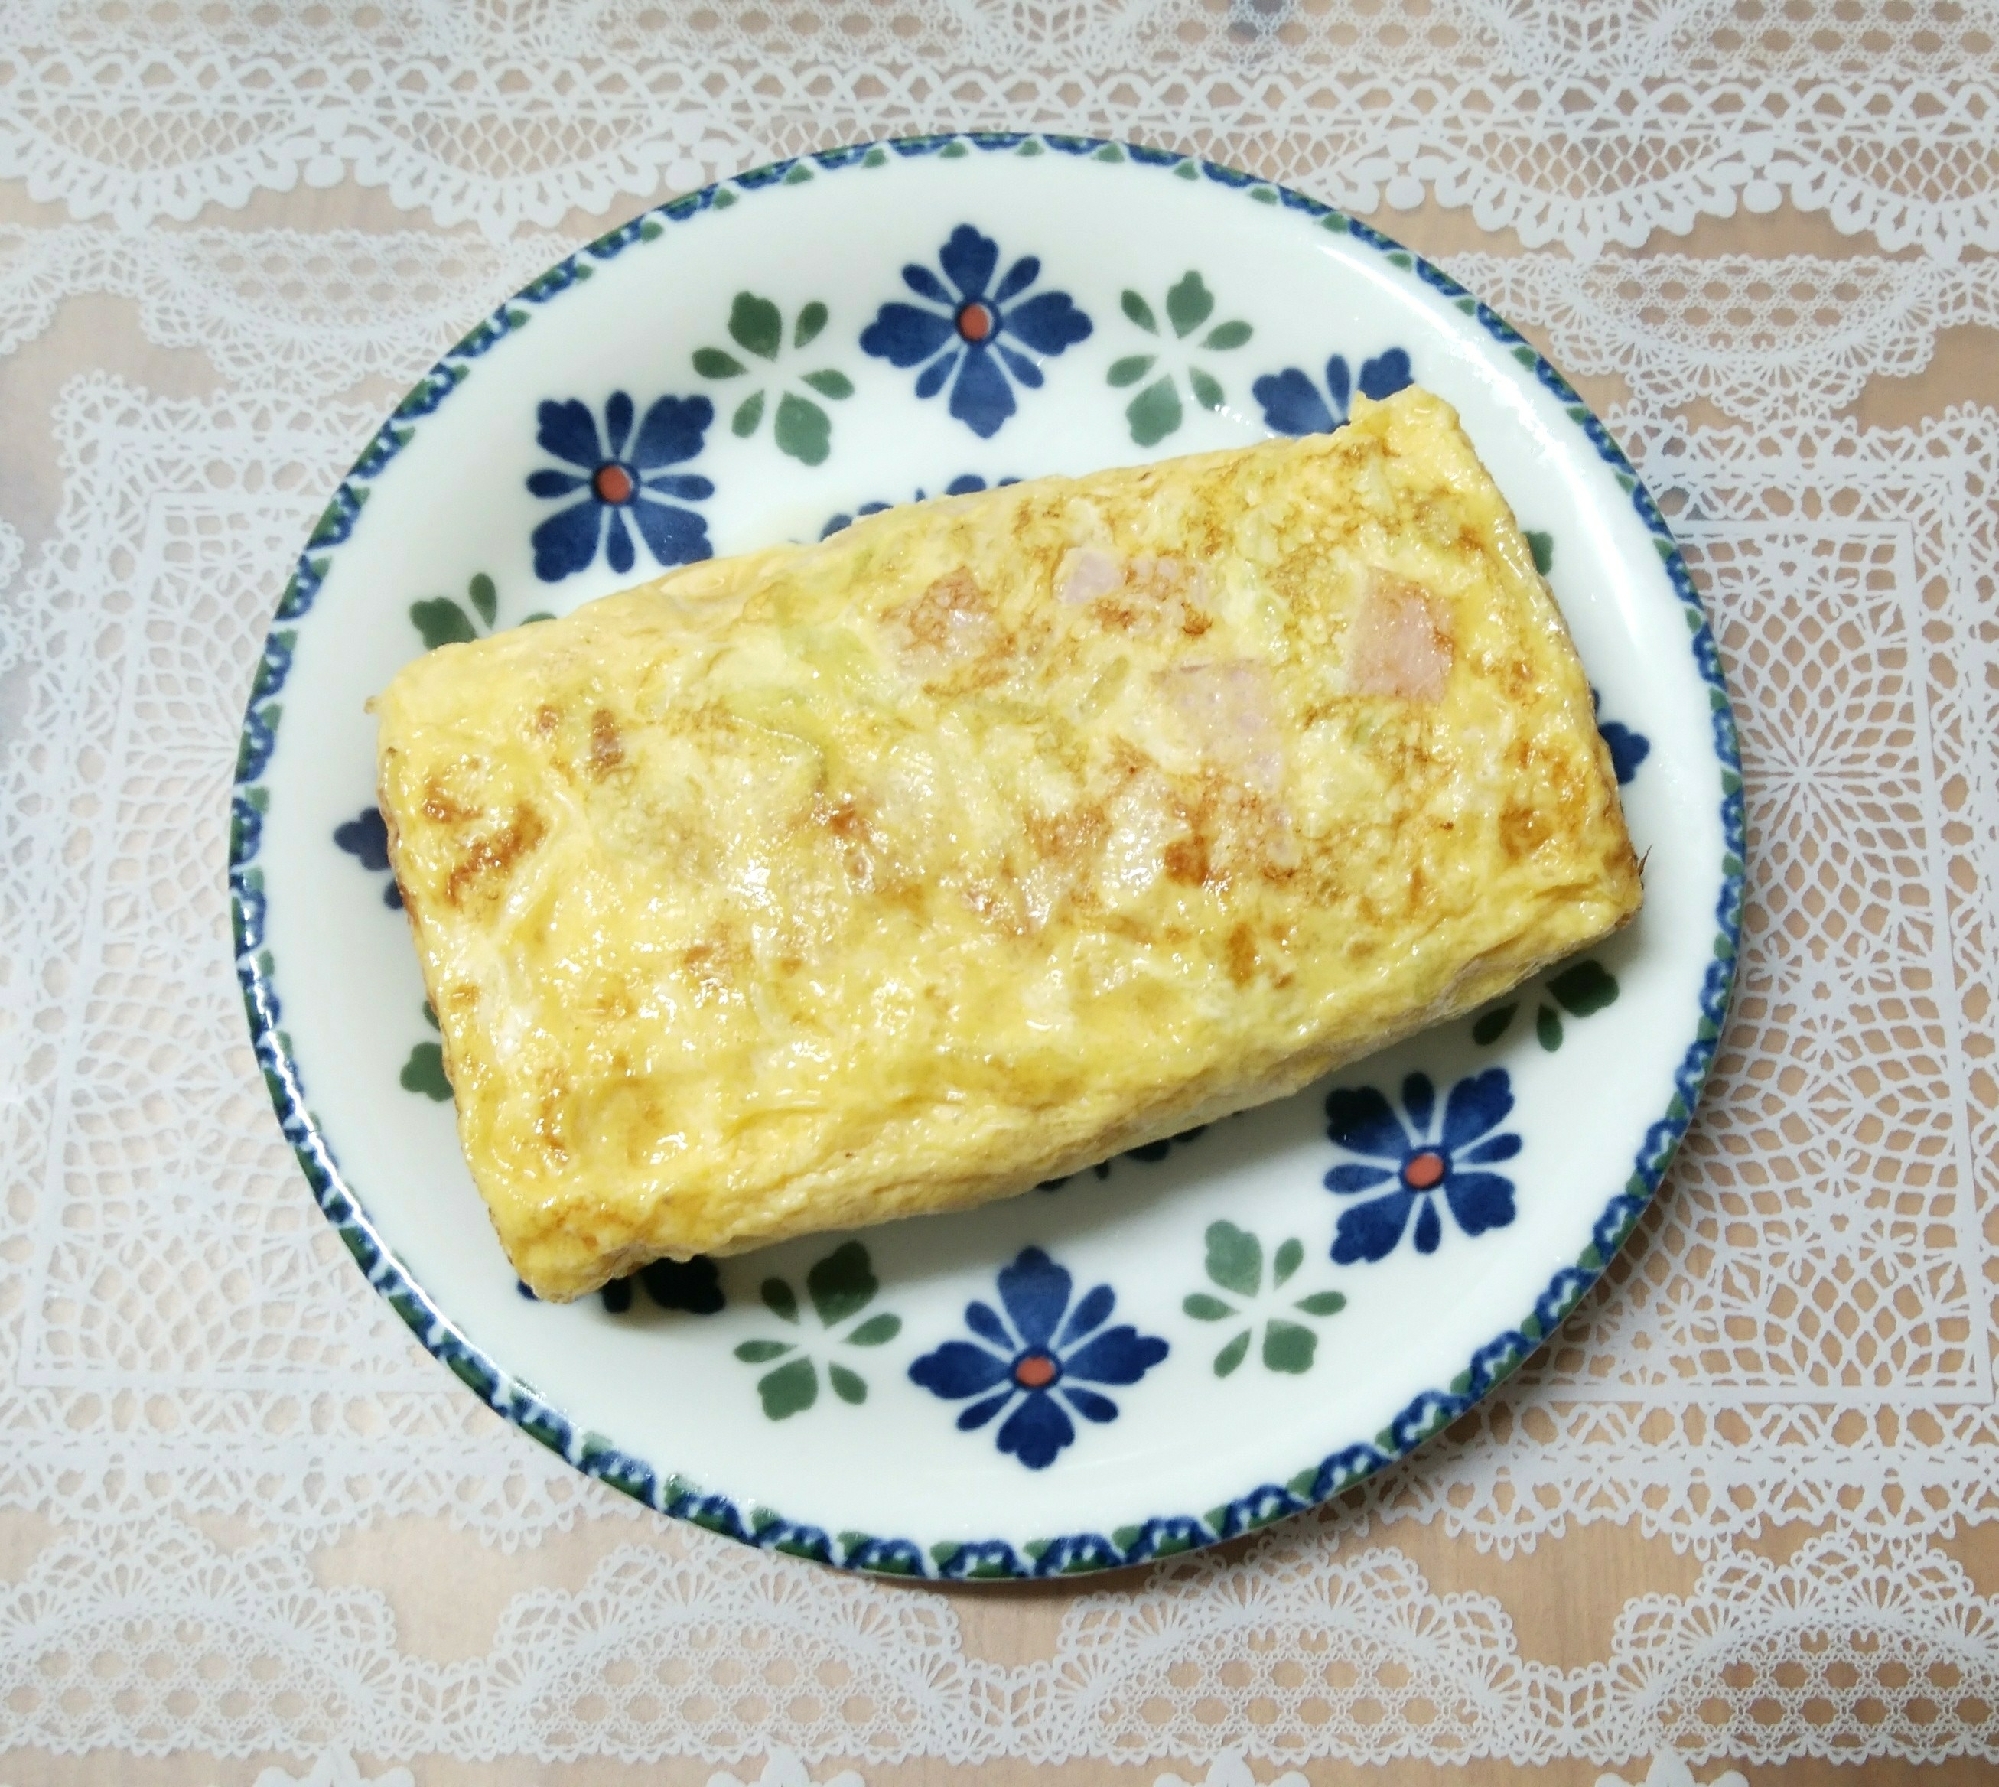 お弁当の一品❤キャベツとハムのマヨネーズ入り卵焼き